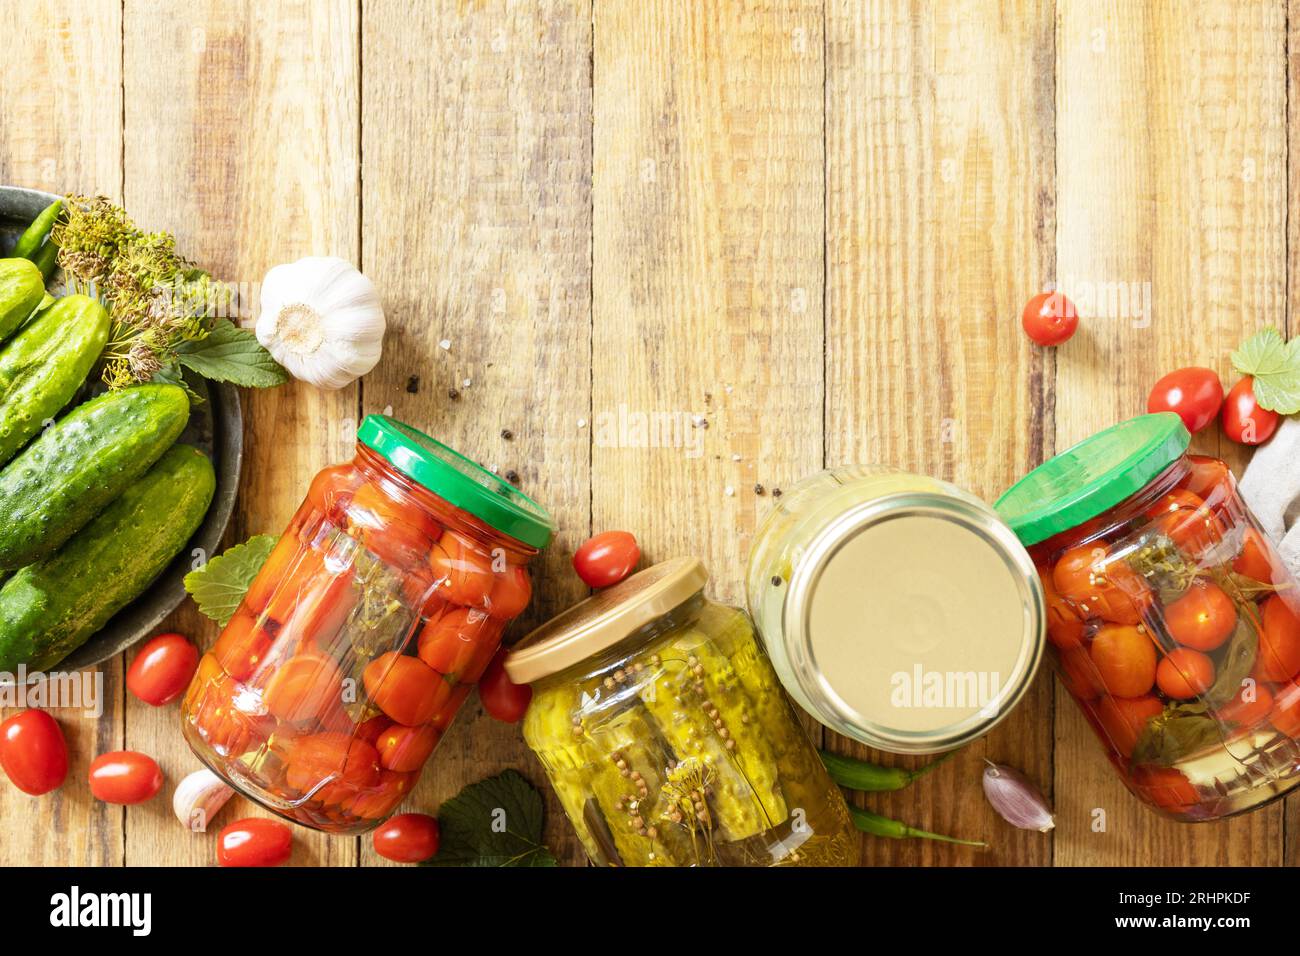 Gesundes, hausgemachtes fermentiertes Essen. Gesalzene eingelegte Gurken und Tomaten, konserviert in Glasbehältern. Hauswirtschaft, Herbsternteerhaltung. Vie Stockfoto